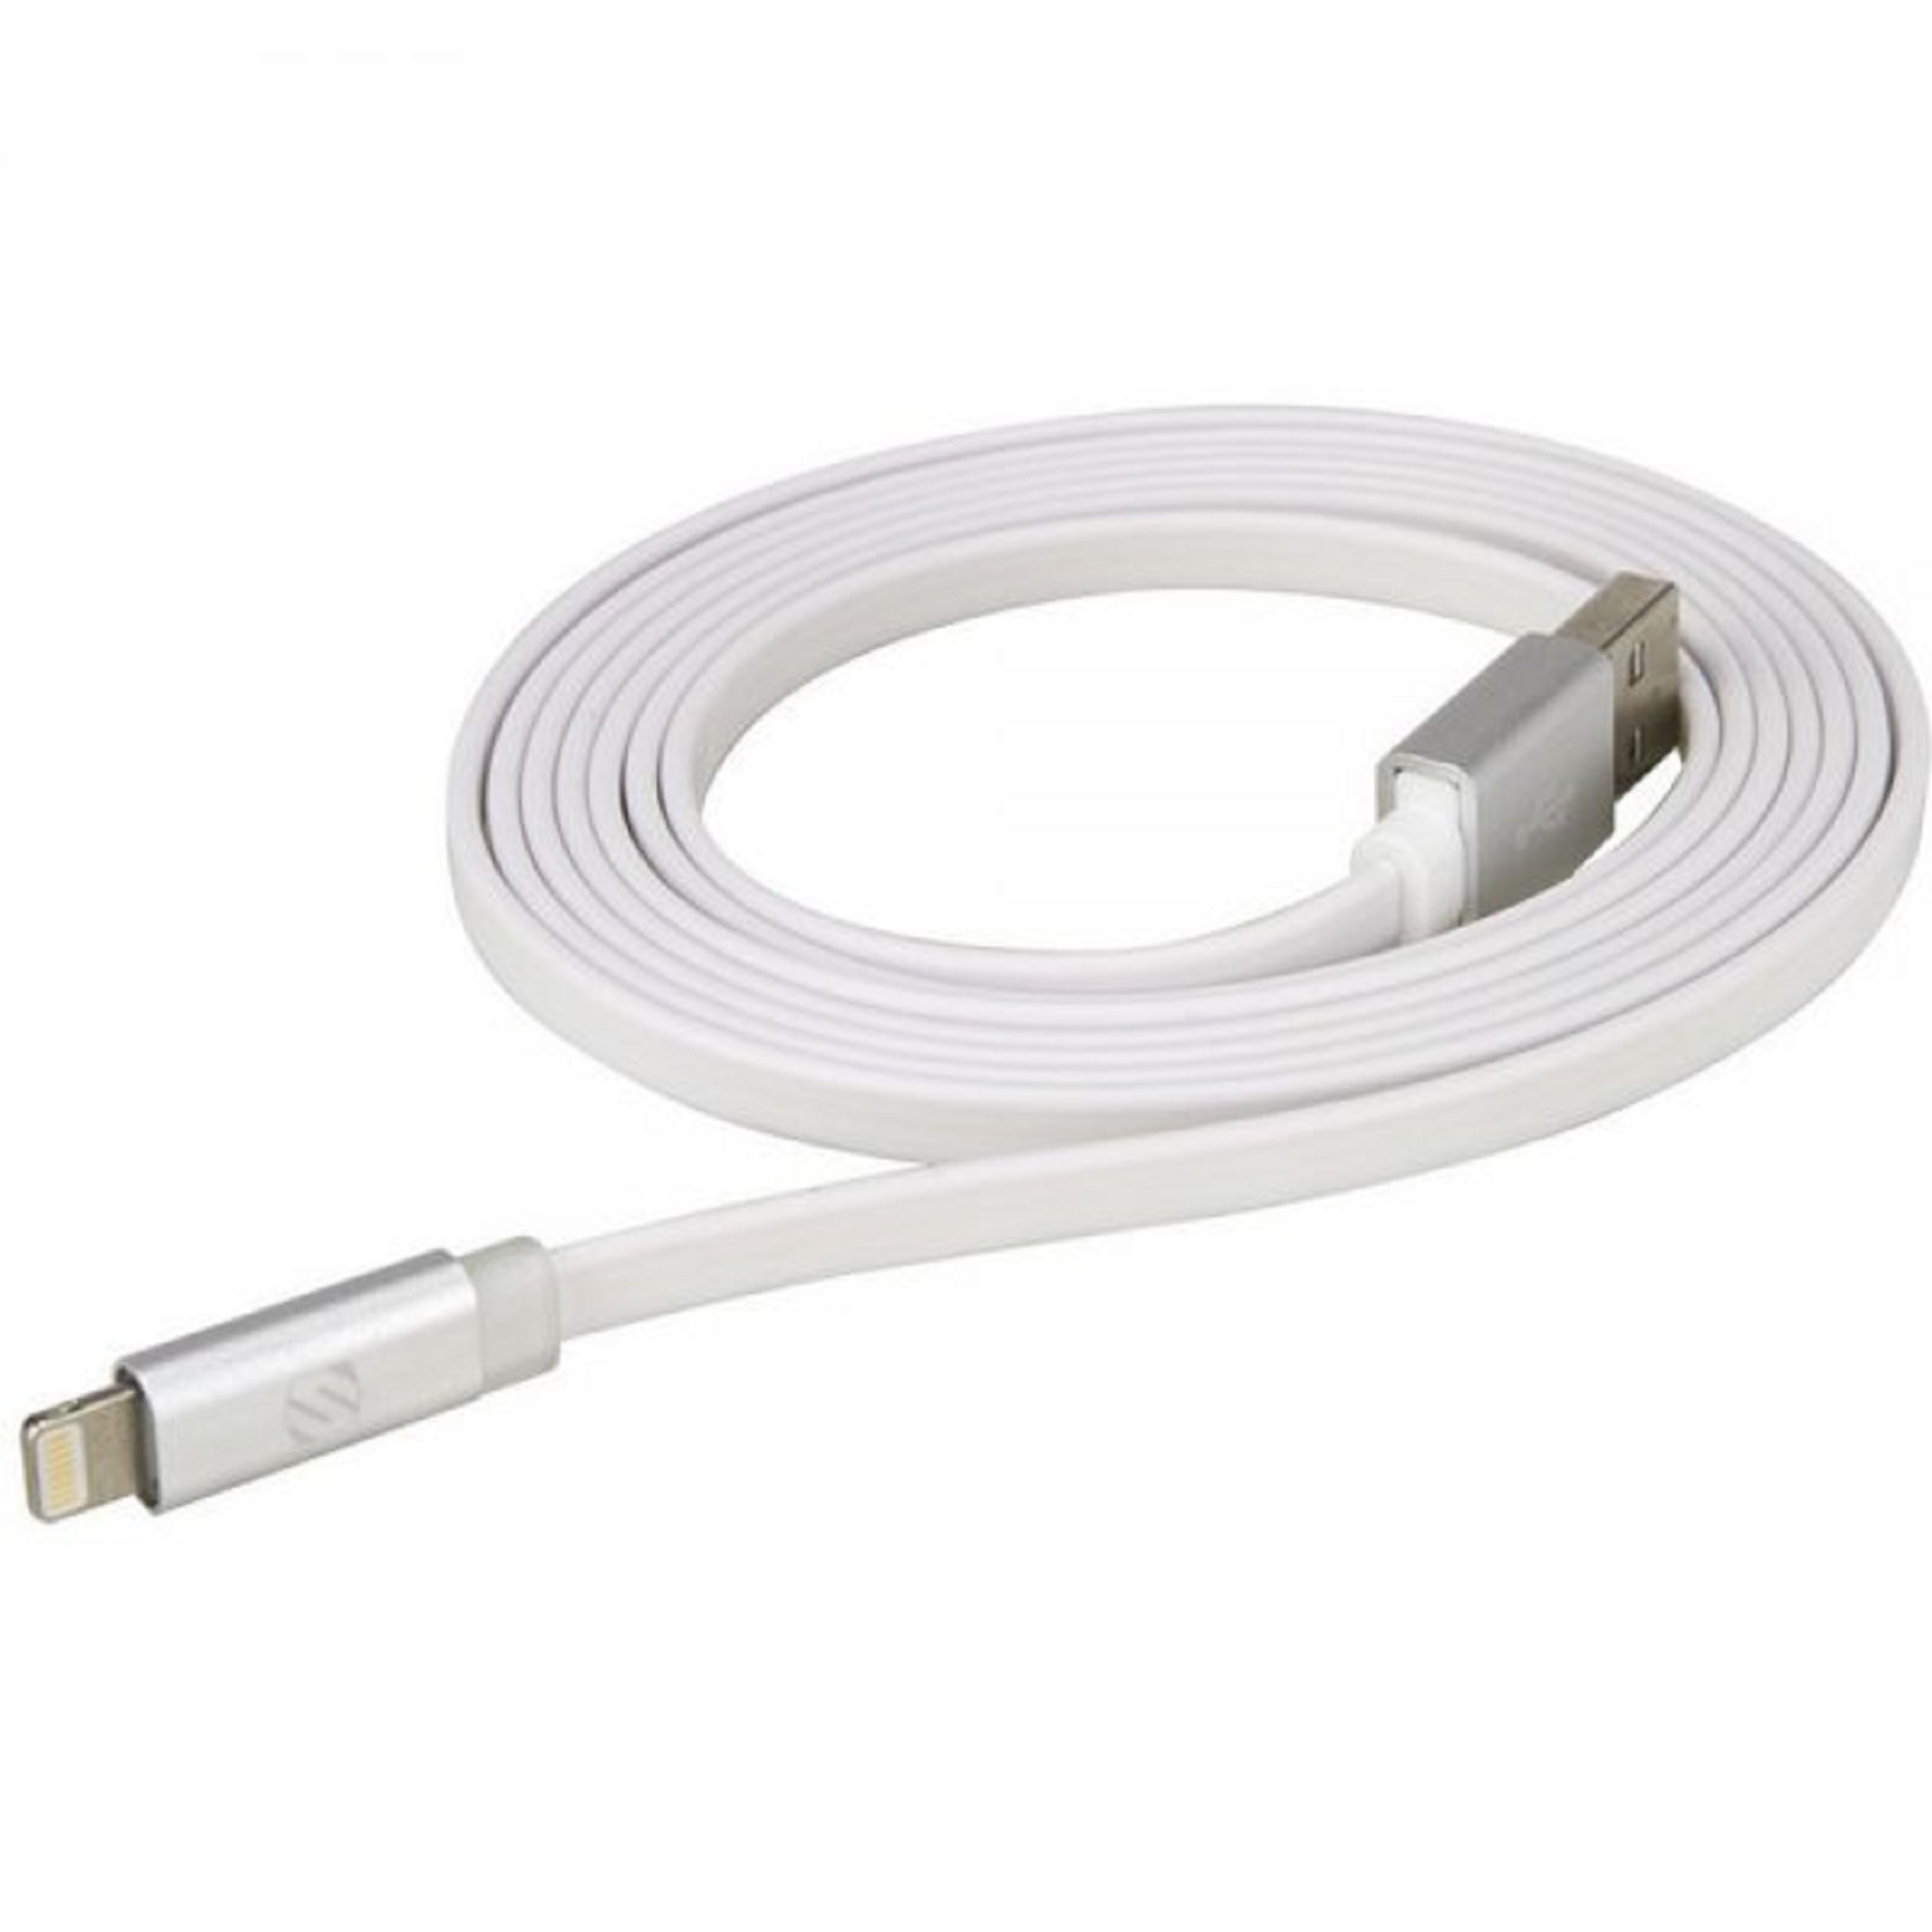 Cable de Carga SCOSCHE Blanco con Luz LED para Iphone